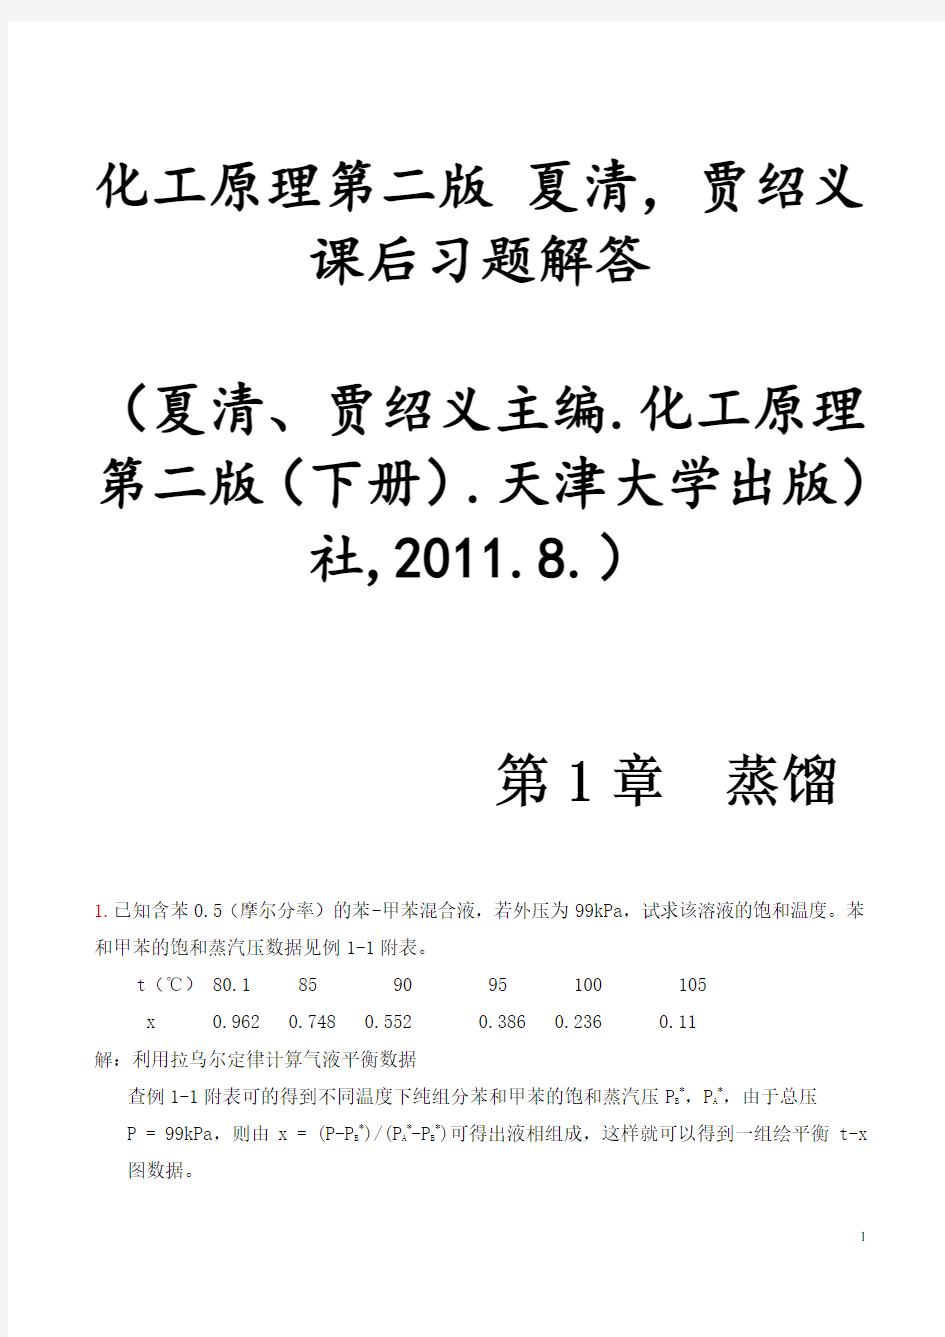 化工原理第二版(下册)夏清贾绍义课后习题解答带图资料